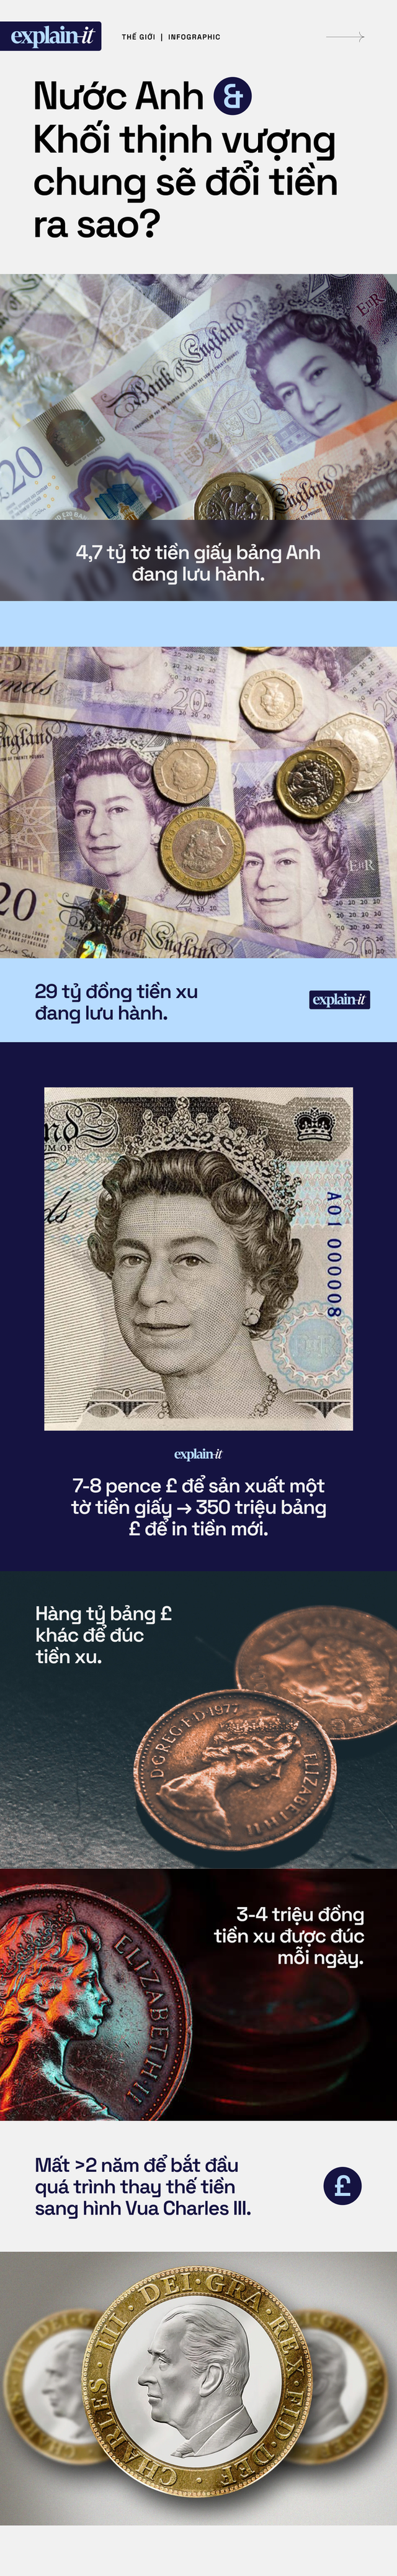 Sau khi Nữ hoàng băng hà, nước Anh và Khối thịnh vượng chung sẽ đổi tiền ra sao? - Ảnh 4.